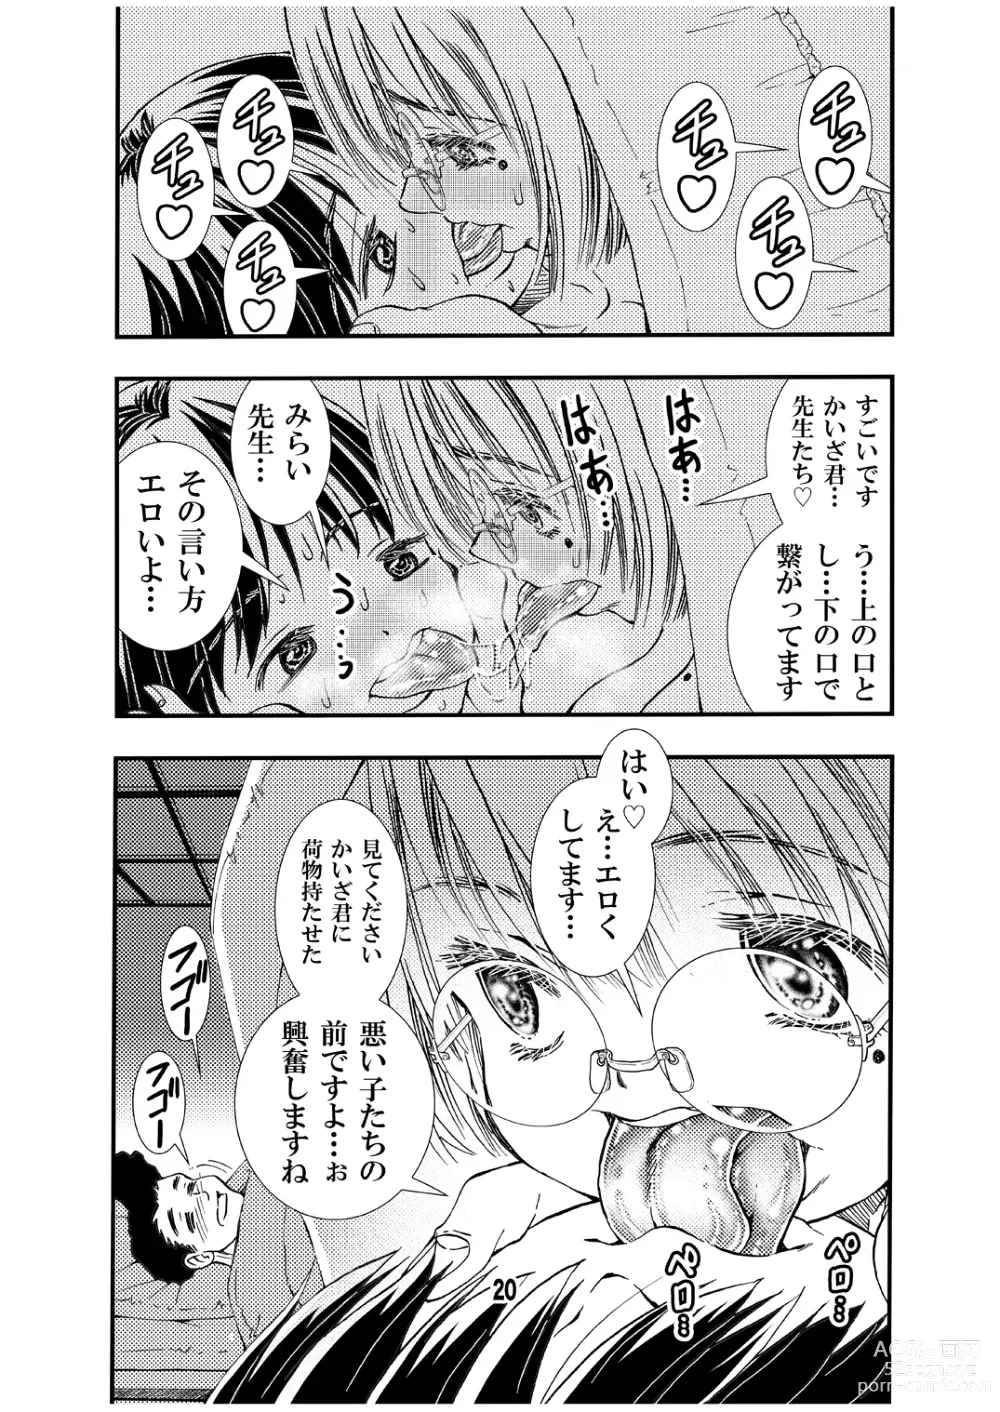 Page 20 of doujinshi Sensei to Shugaku Ryoko Hatsu Ecchi Doujinshiban